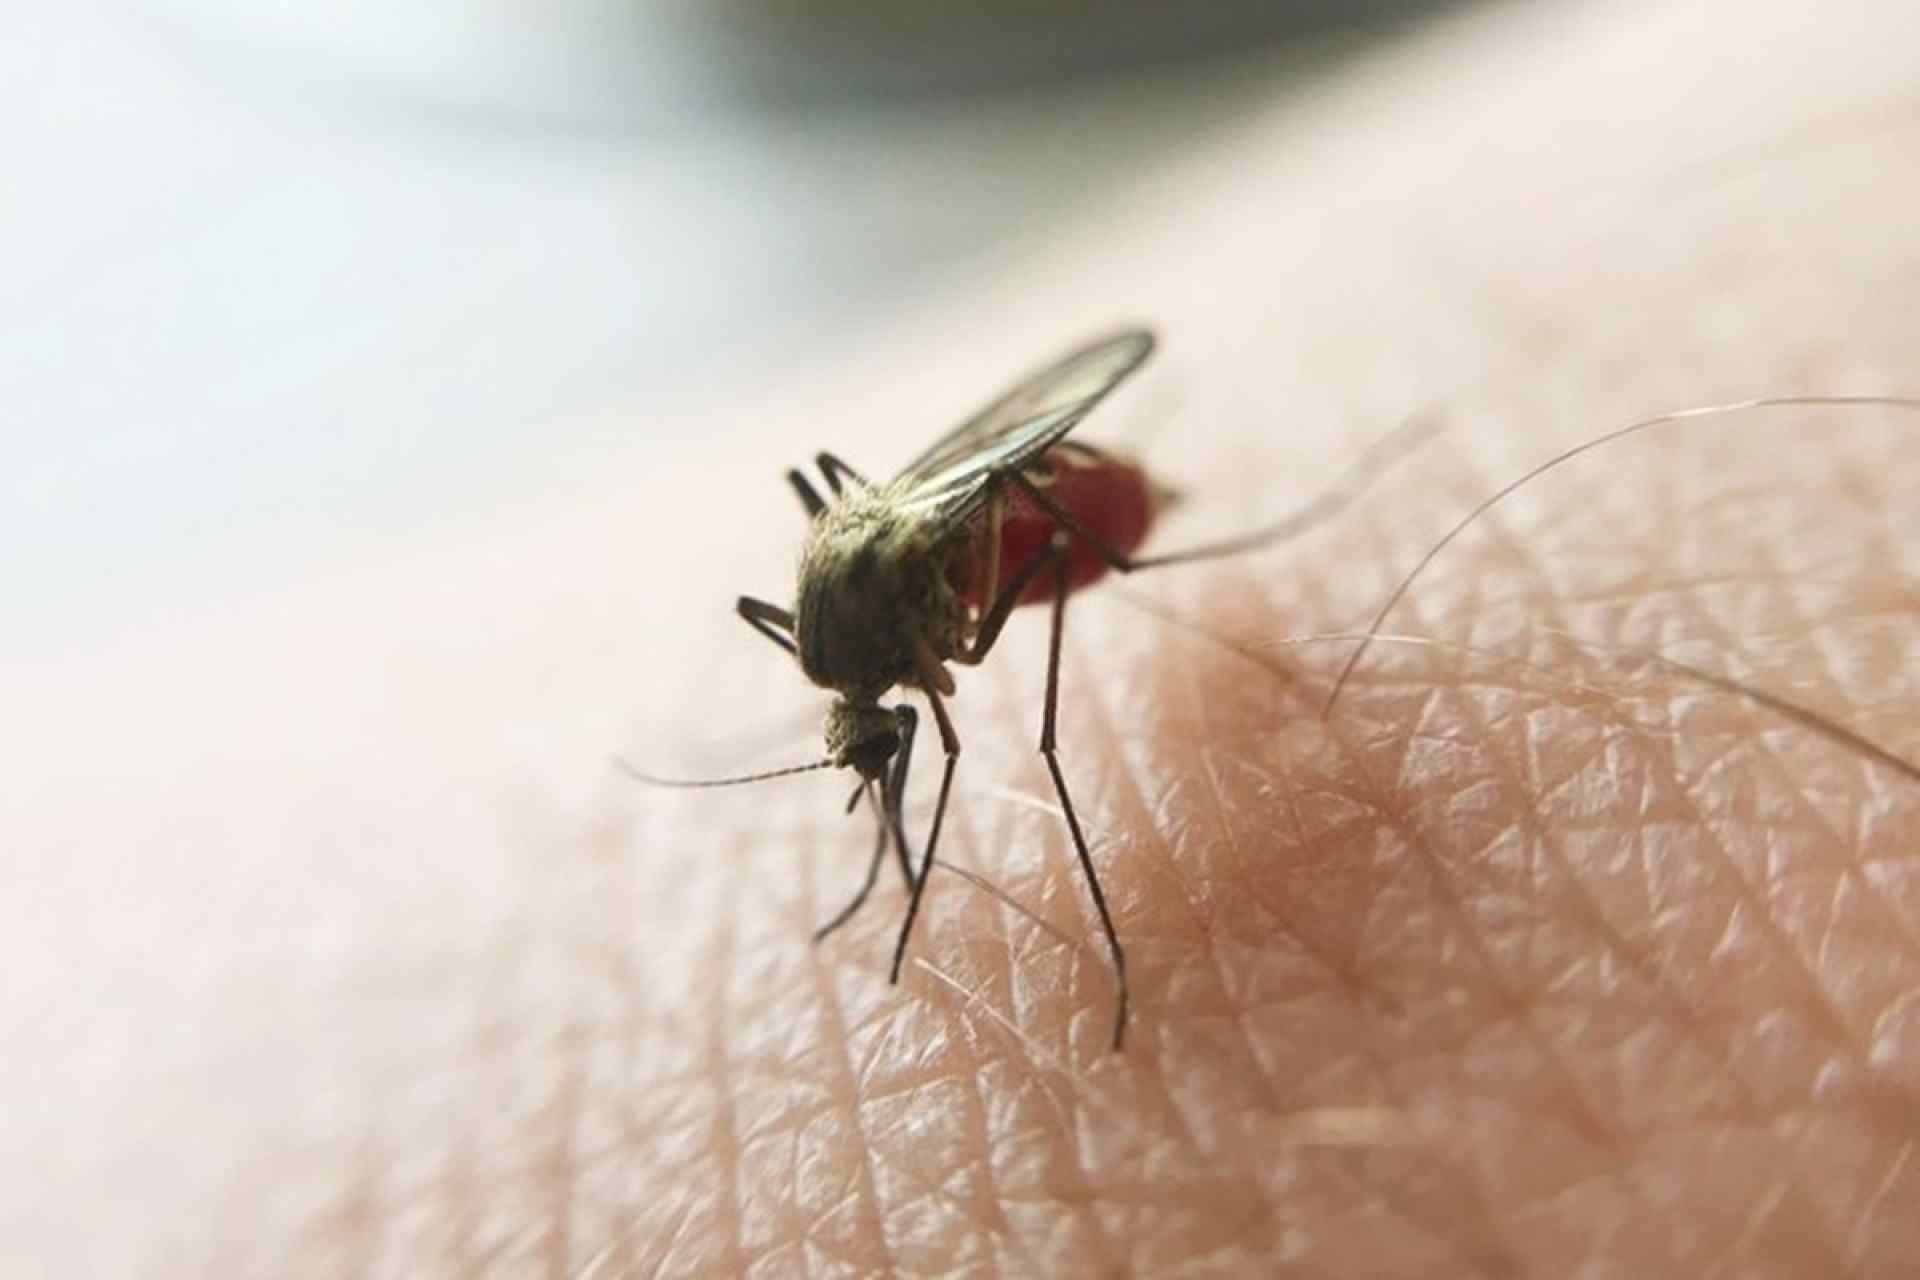 Endêmica na região Norte, malária vem aumentando no Centro-Oeste